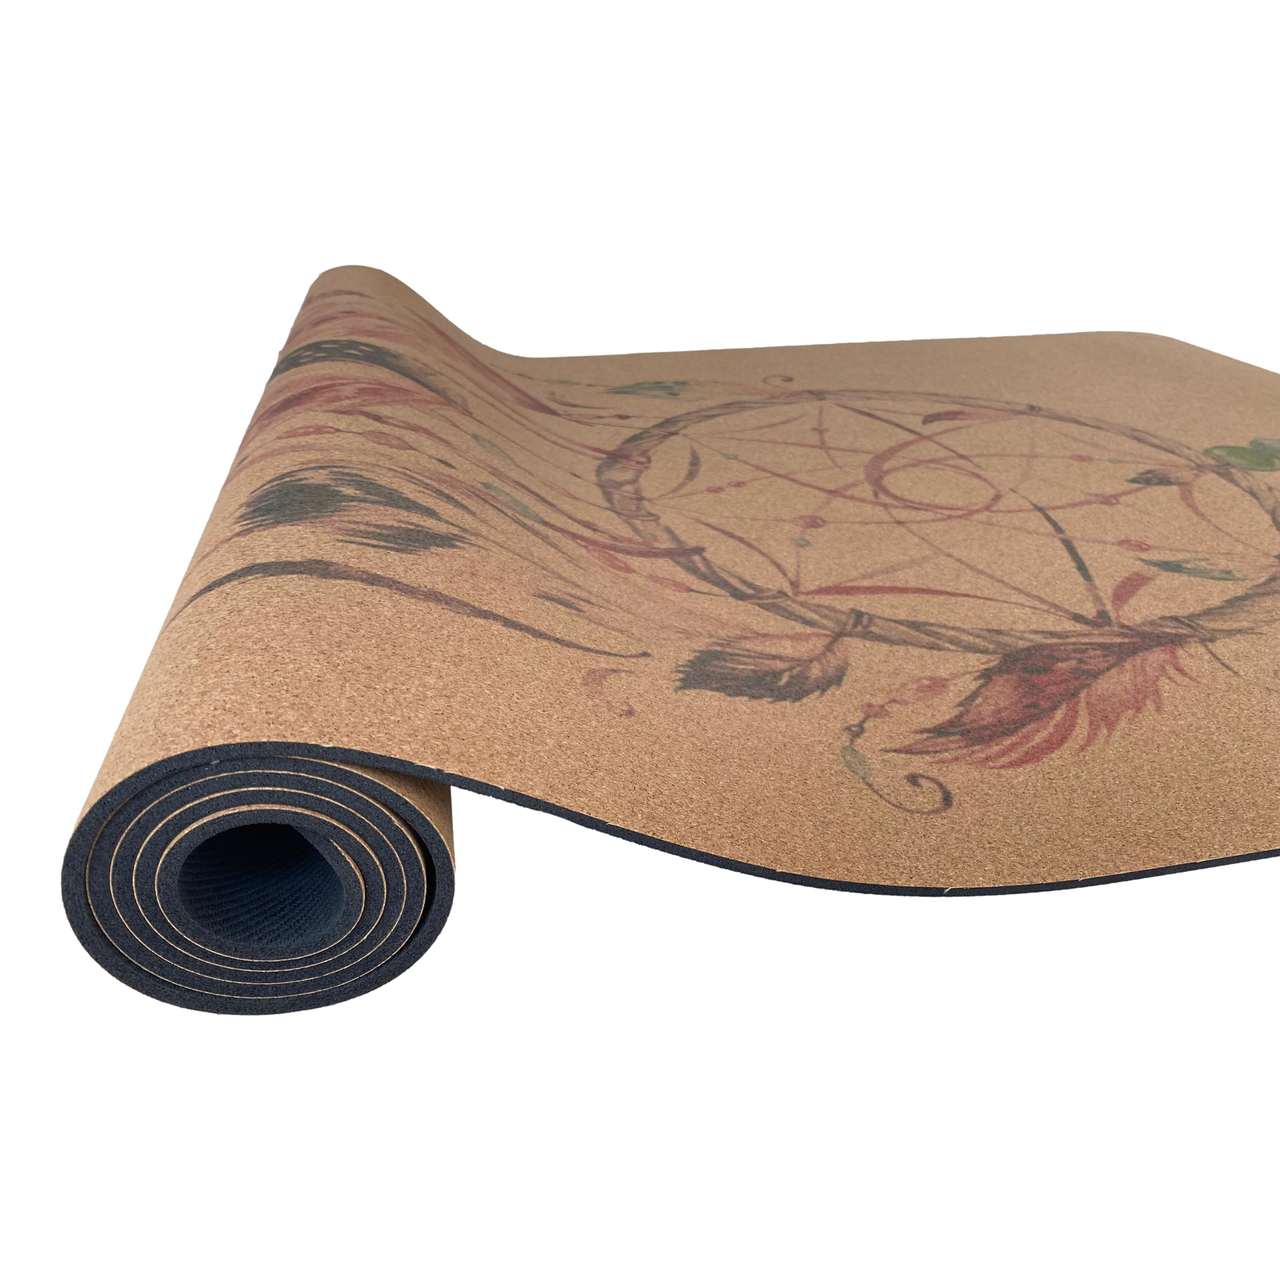 Tapete de Yoga Estampado - Cortiça e Borracha Natural - Apanhador de Sonhos - 5mm 183x68cm  - Om Joy